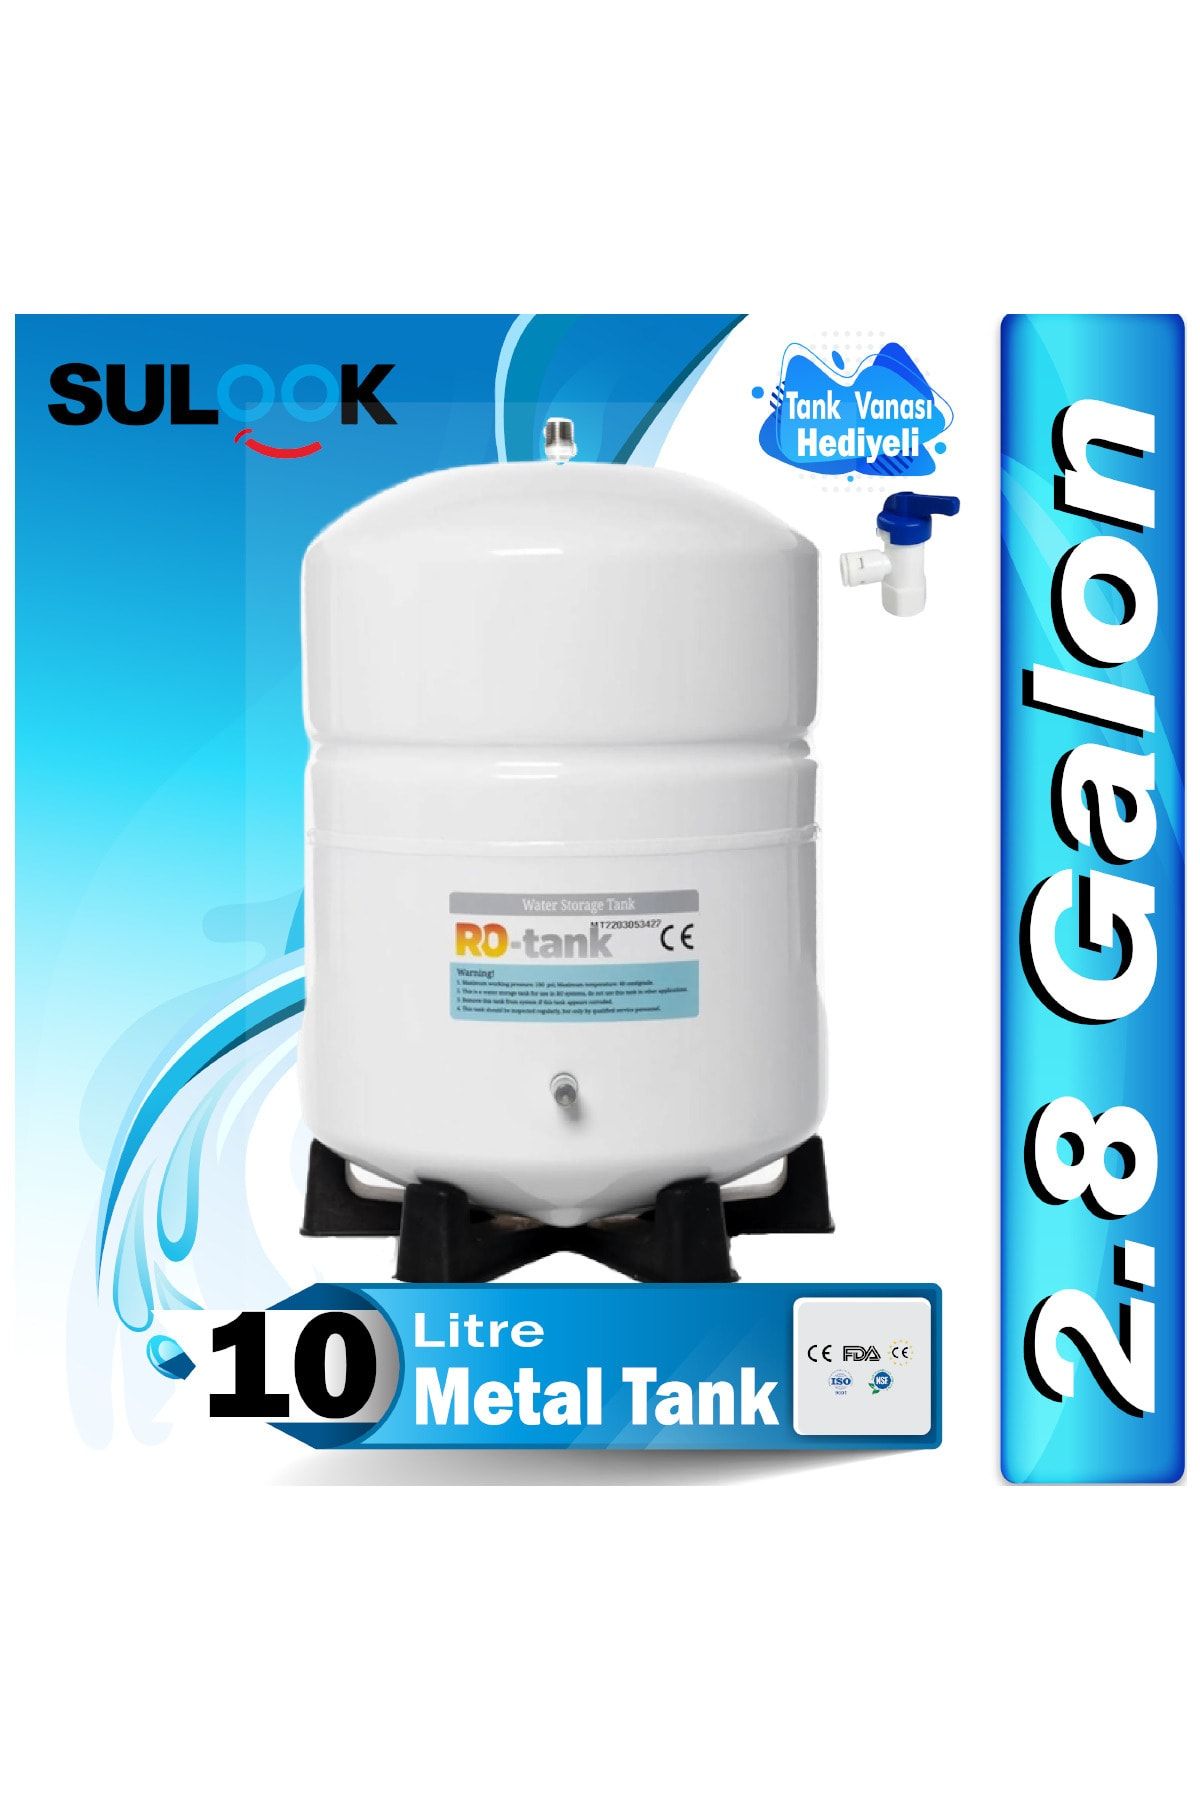 SULOOK Su Arıtma Deposu,Su Arıtma Tankı(2.8 Galon) 10 Litre Metal Tank